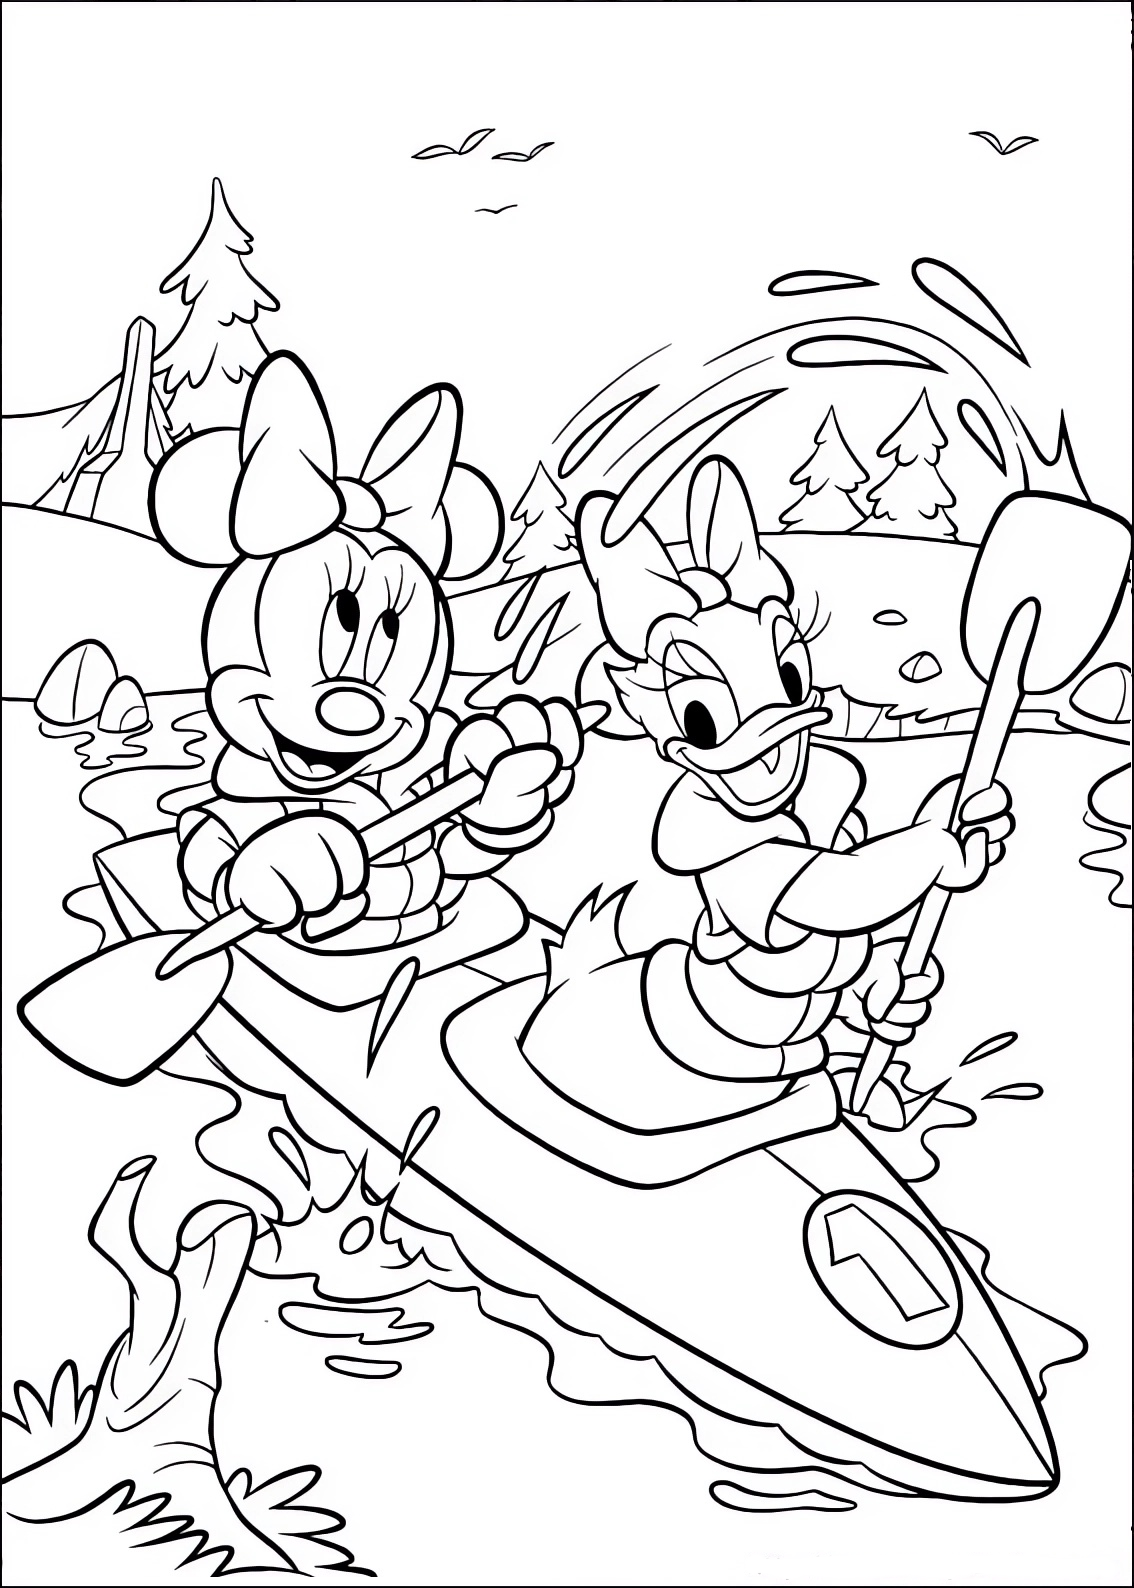 Disegno da colorare di Minnie e Paperina Daisy sul Kayak